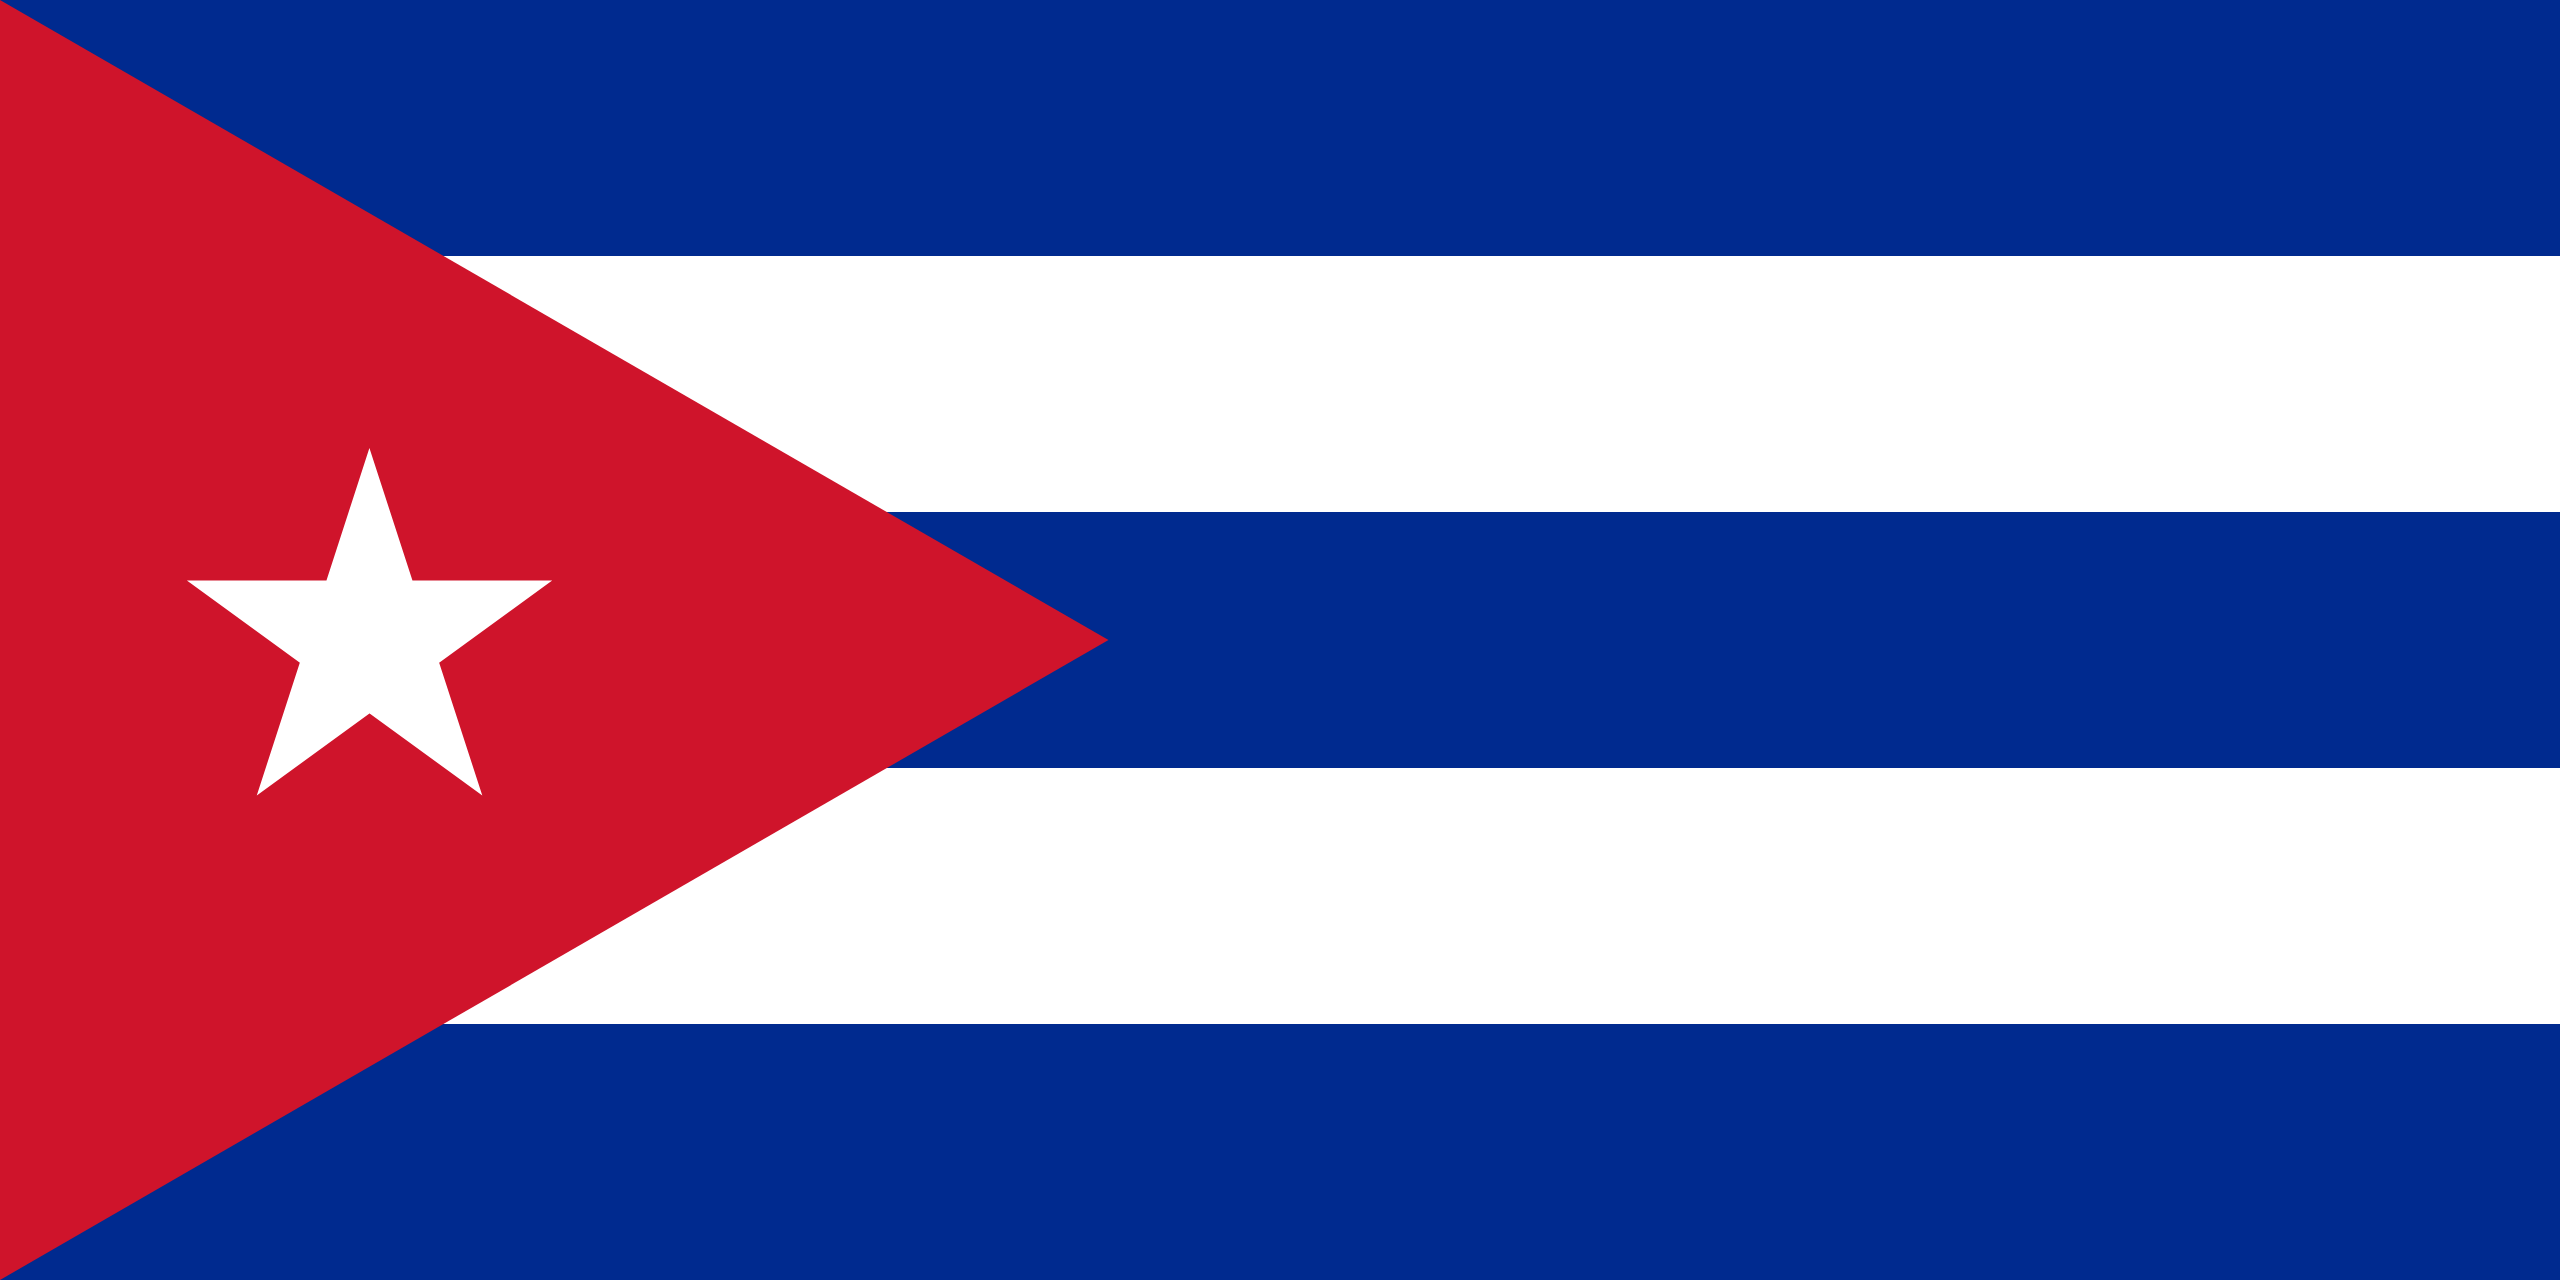 Drapeau Cuba